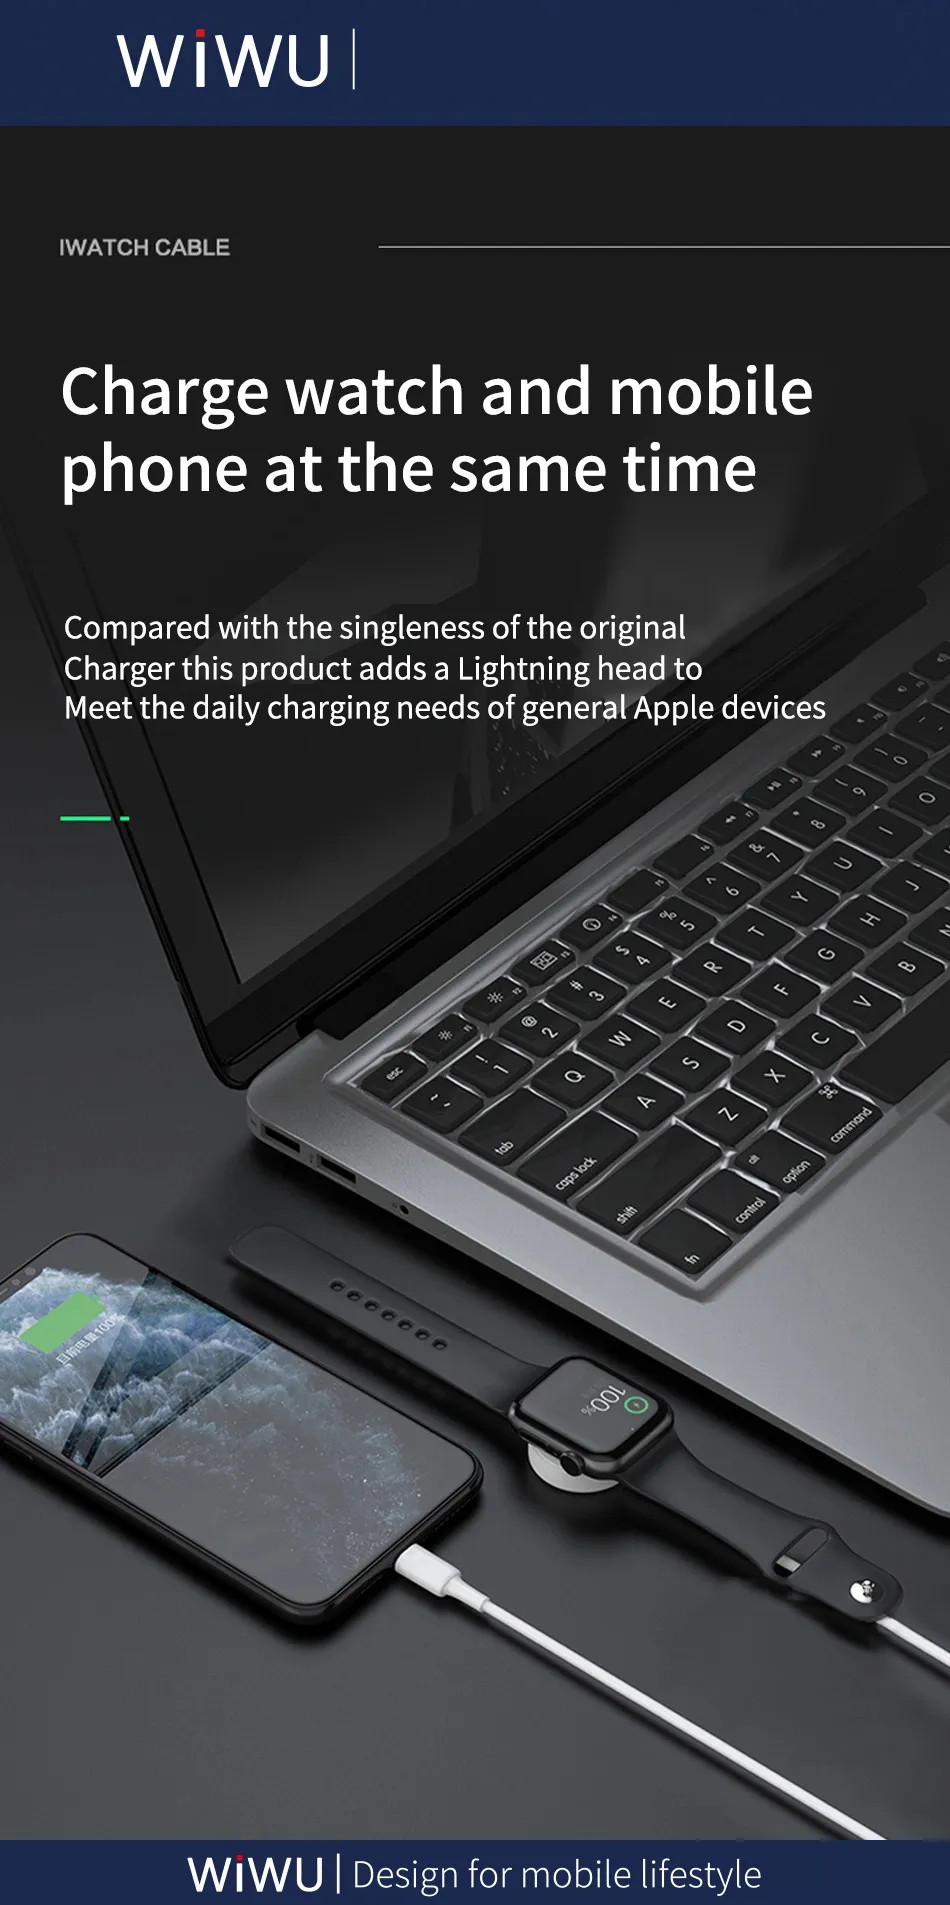 Dây cáp đế sạc nhanh 2.5W cho Apple Watch kiêm dây sạc Lightning cho iPhone / iPad / tai nghe AirPods / Airpods Pro hiệu WiWu M10 siêu nhỏ gọn, Sạc cùng lúc 2 thiết bị, chuẩn MFi Apple